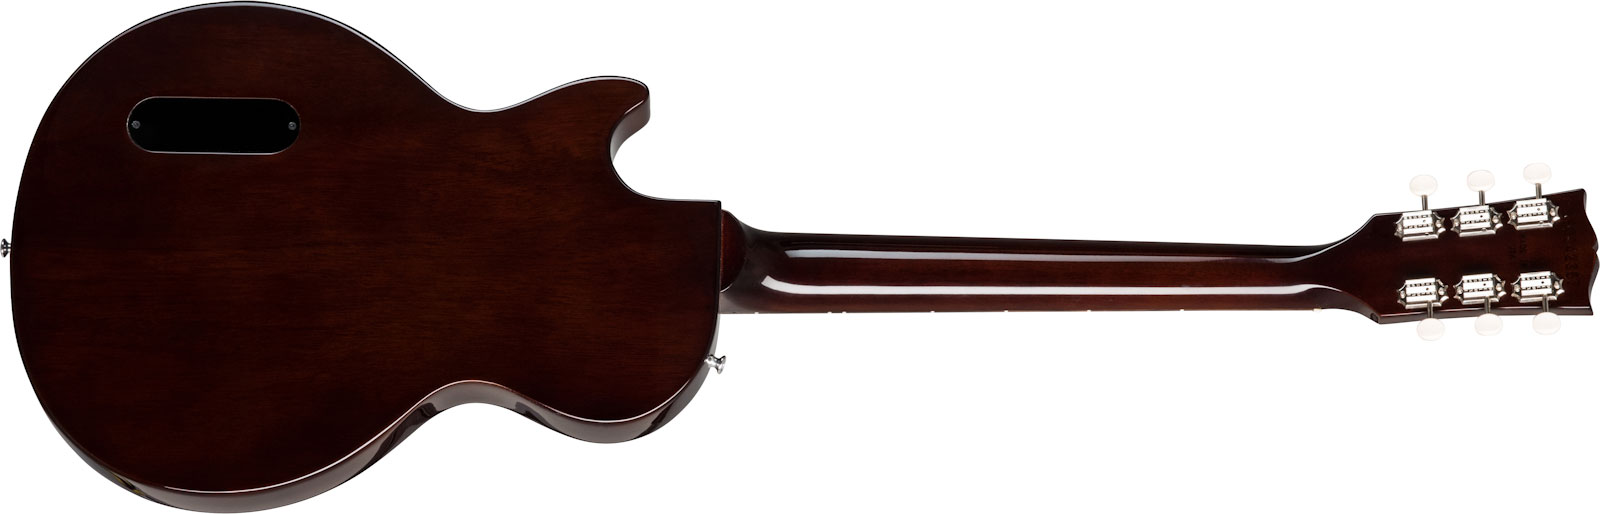 Gibson Les Paul Junior Original P90 Ht Rw - Vintage Tobacco Burst - Guitare Électrique Single Cut - Variation 1